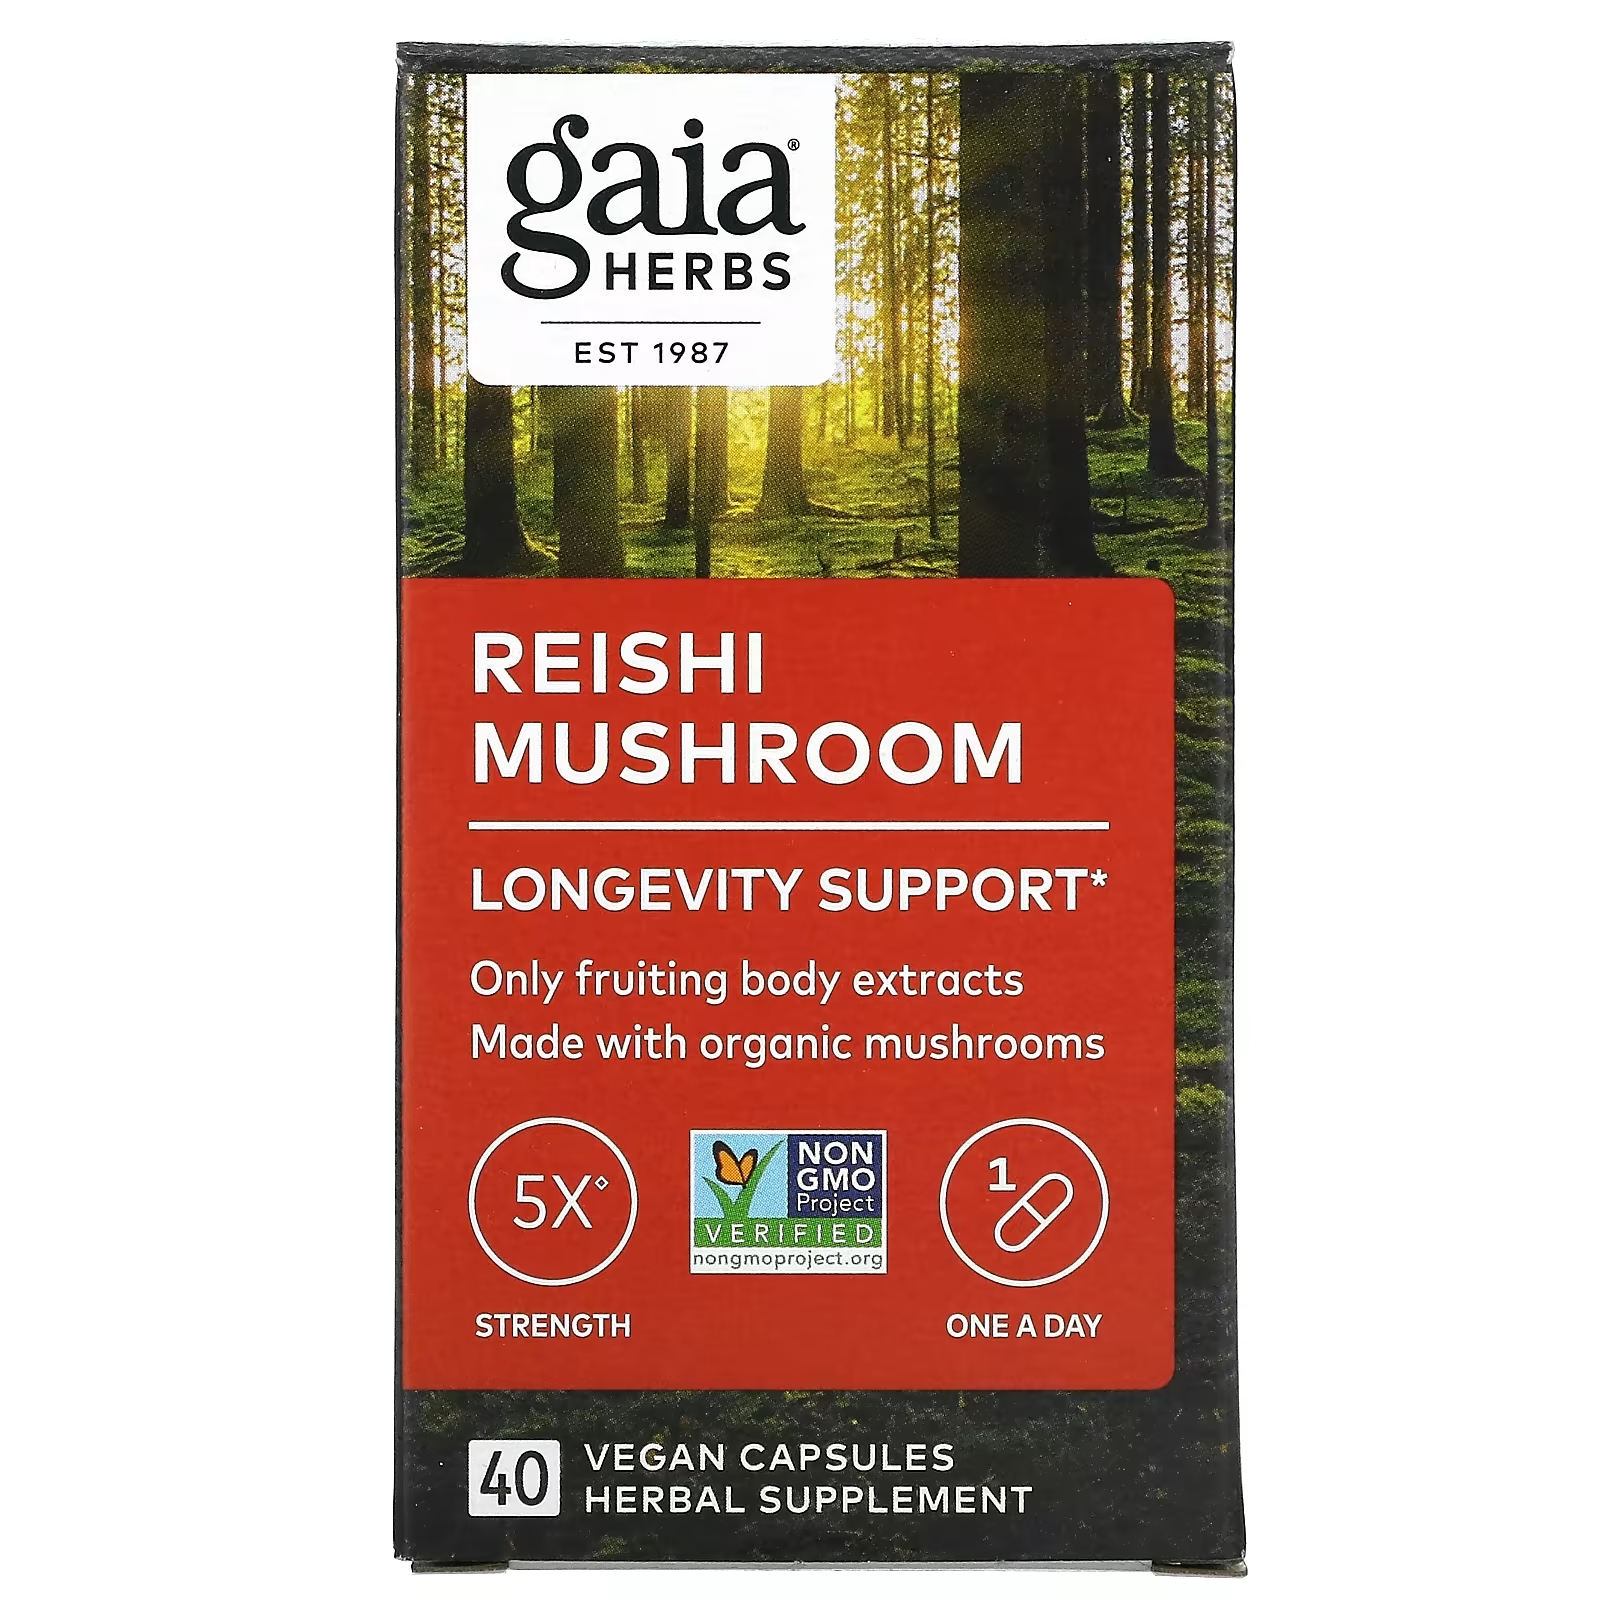 Гриб Рейши Gaia Herbs, 40 веганских капсул гриб львиная грива gaia herbs 40 веганских капсул